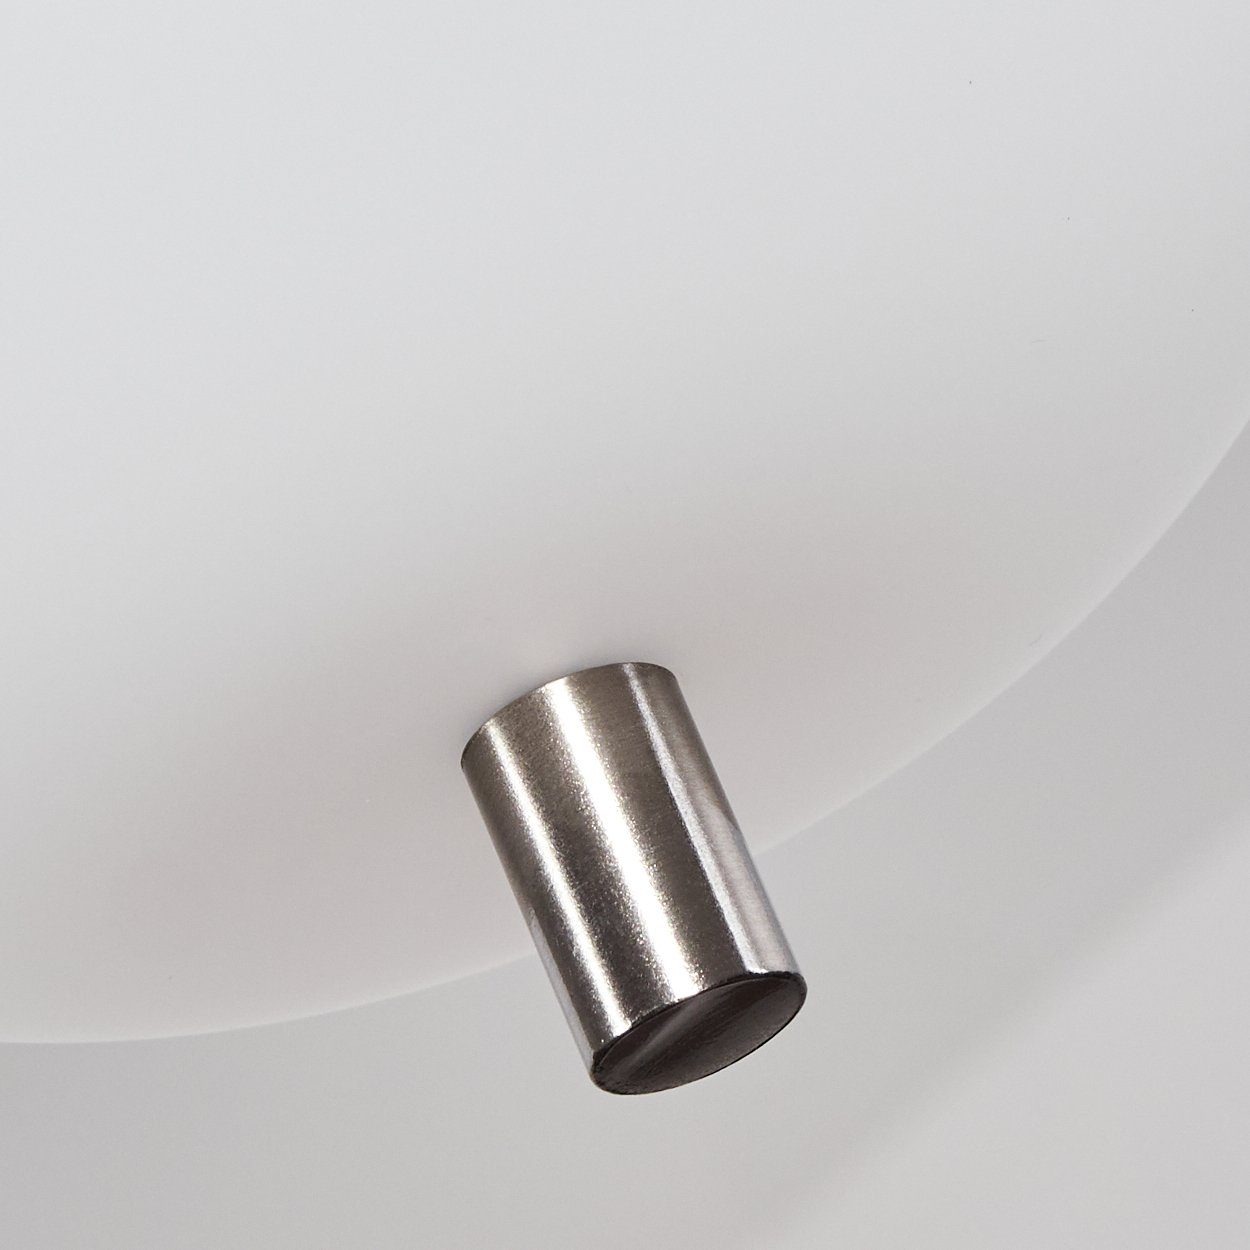 Hängeleuchte ohne hofstein »Ambrogio« aus Metall/Glas in Nickel-matt/Weiß, Hängelampe Leuchtmittel moderne